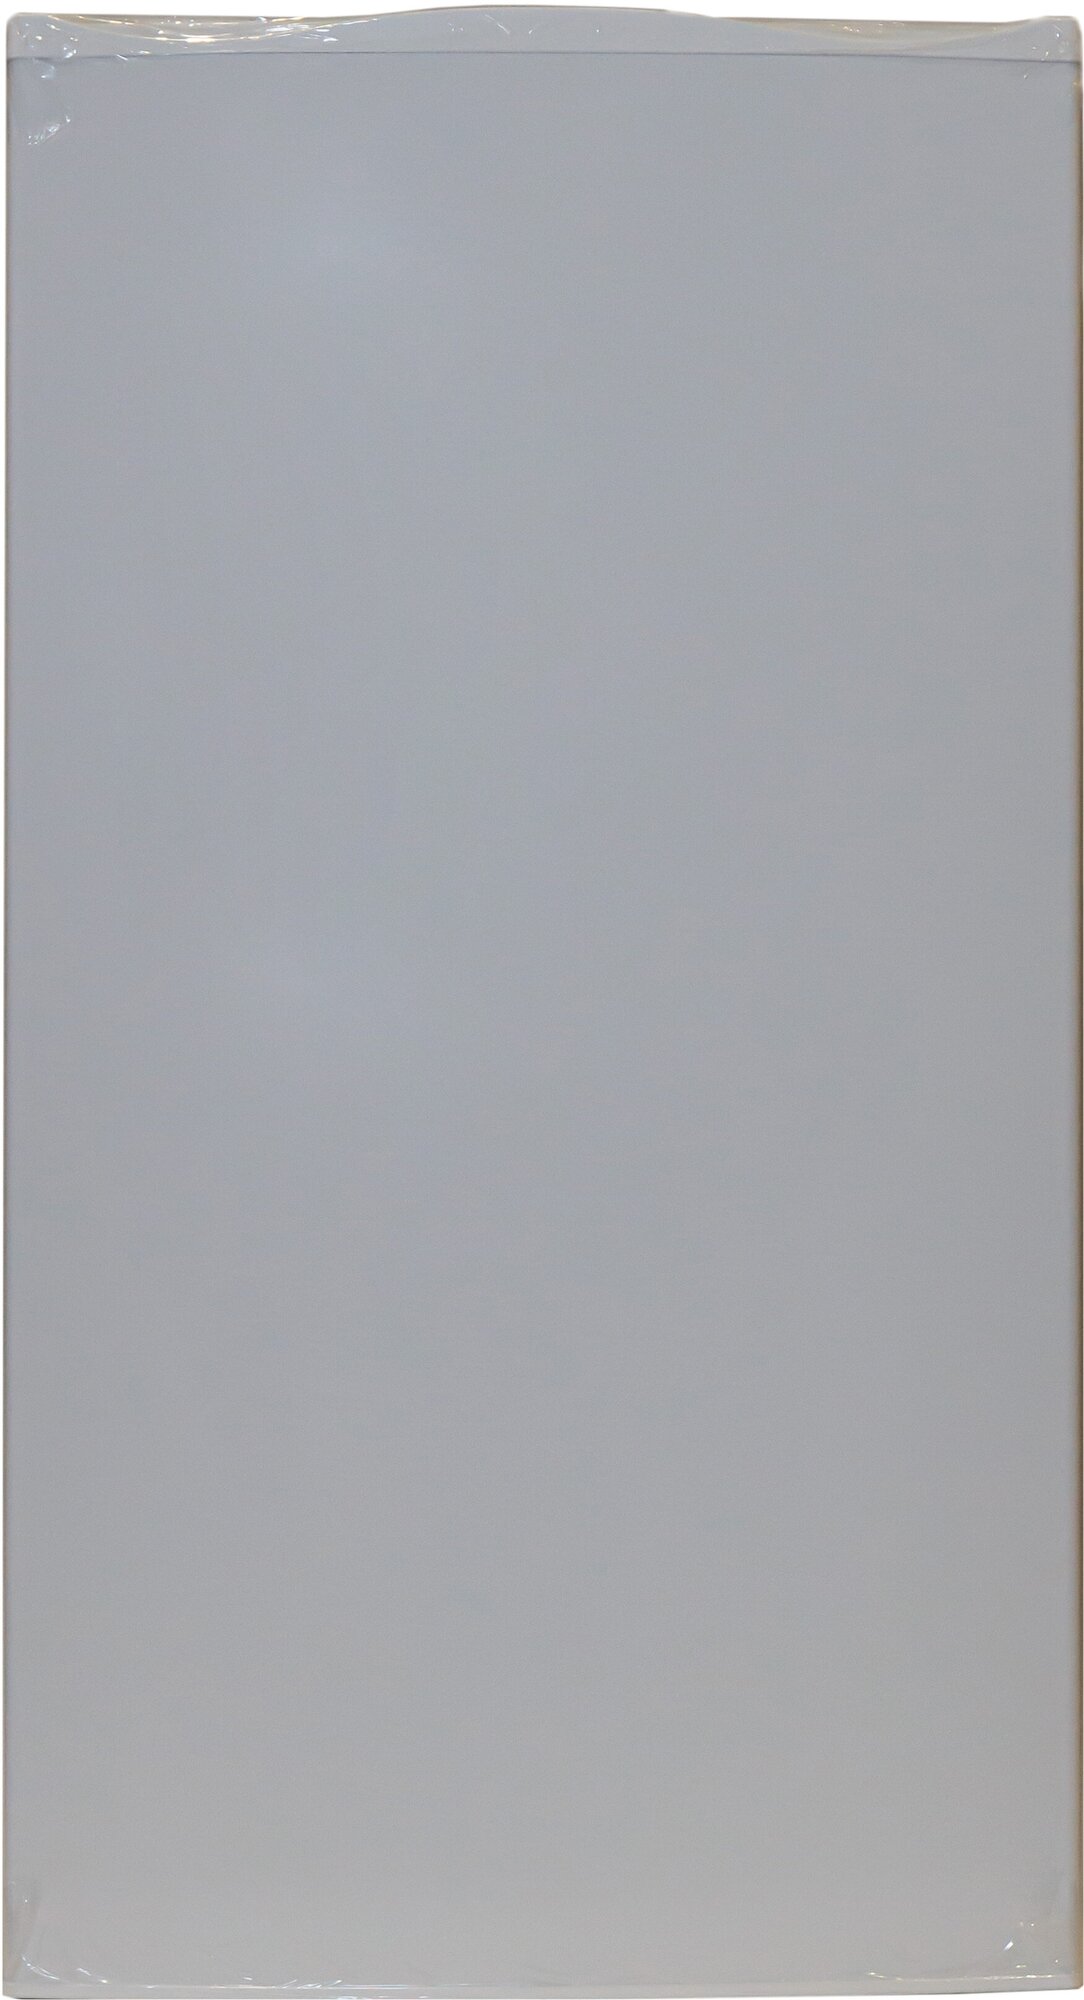 Дверь холодильной камеры 1083X593ММ (белая, под механический выключатель света) Атлант 730534101122